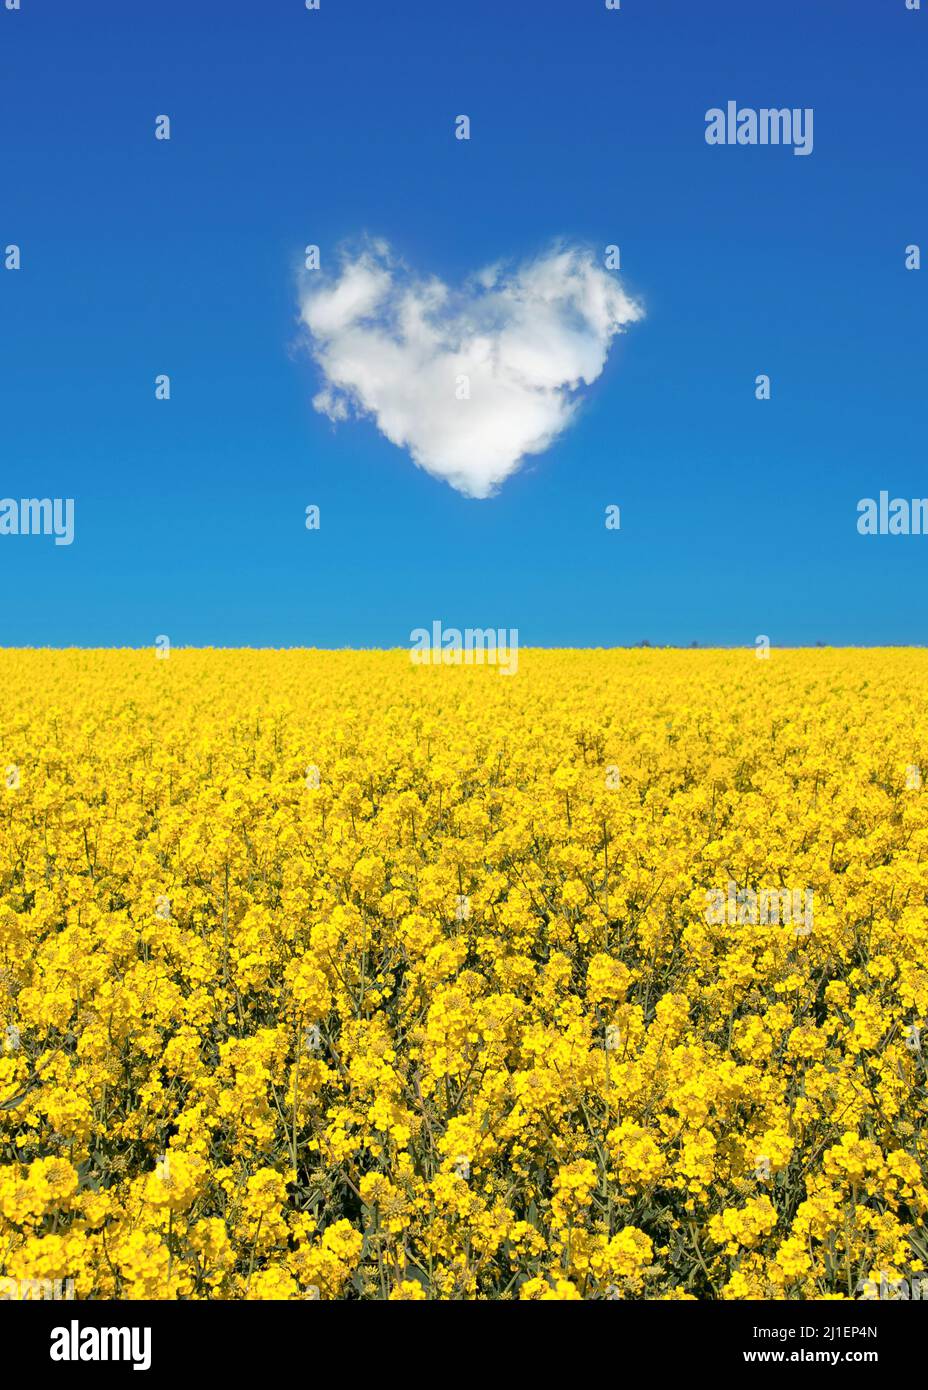 Paz para Ucrania, campo amarillo y cielo azul con una nube en forma de corazón, colores de la bandera ucraniana, Ucrania concepto de apoyo a la guerra Foto de stock